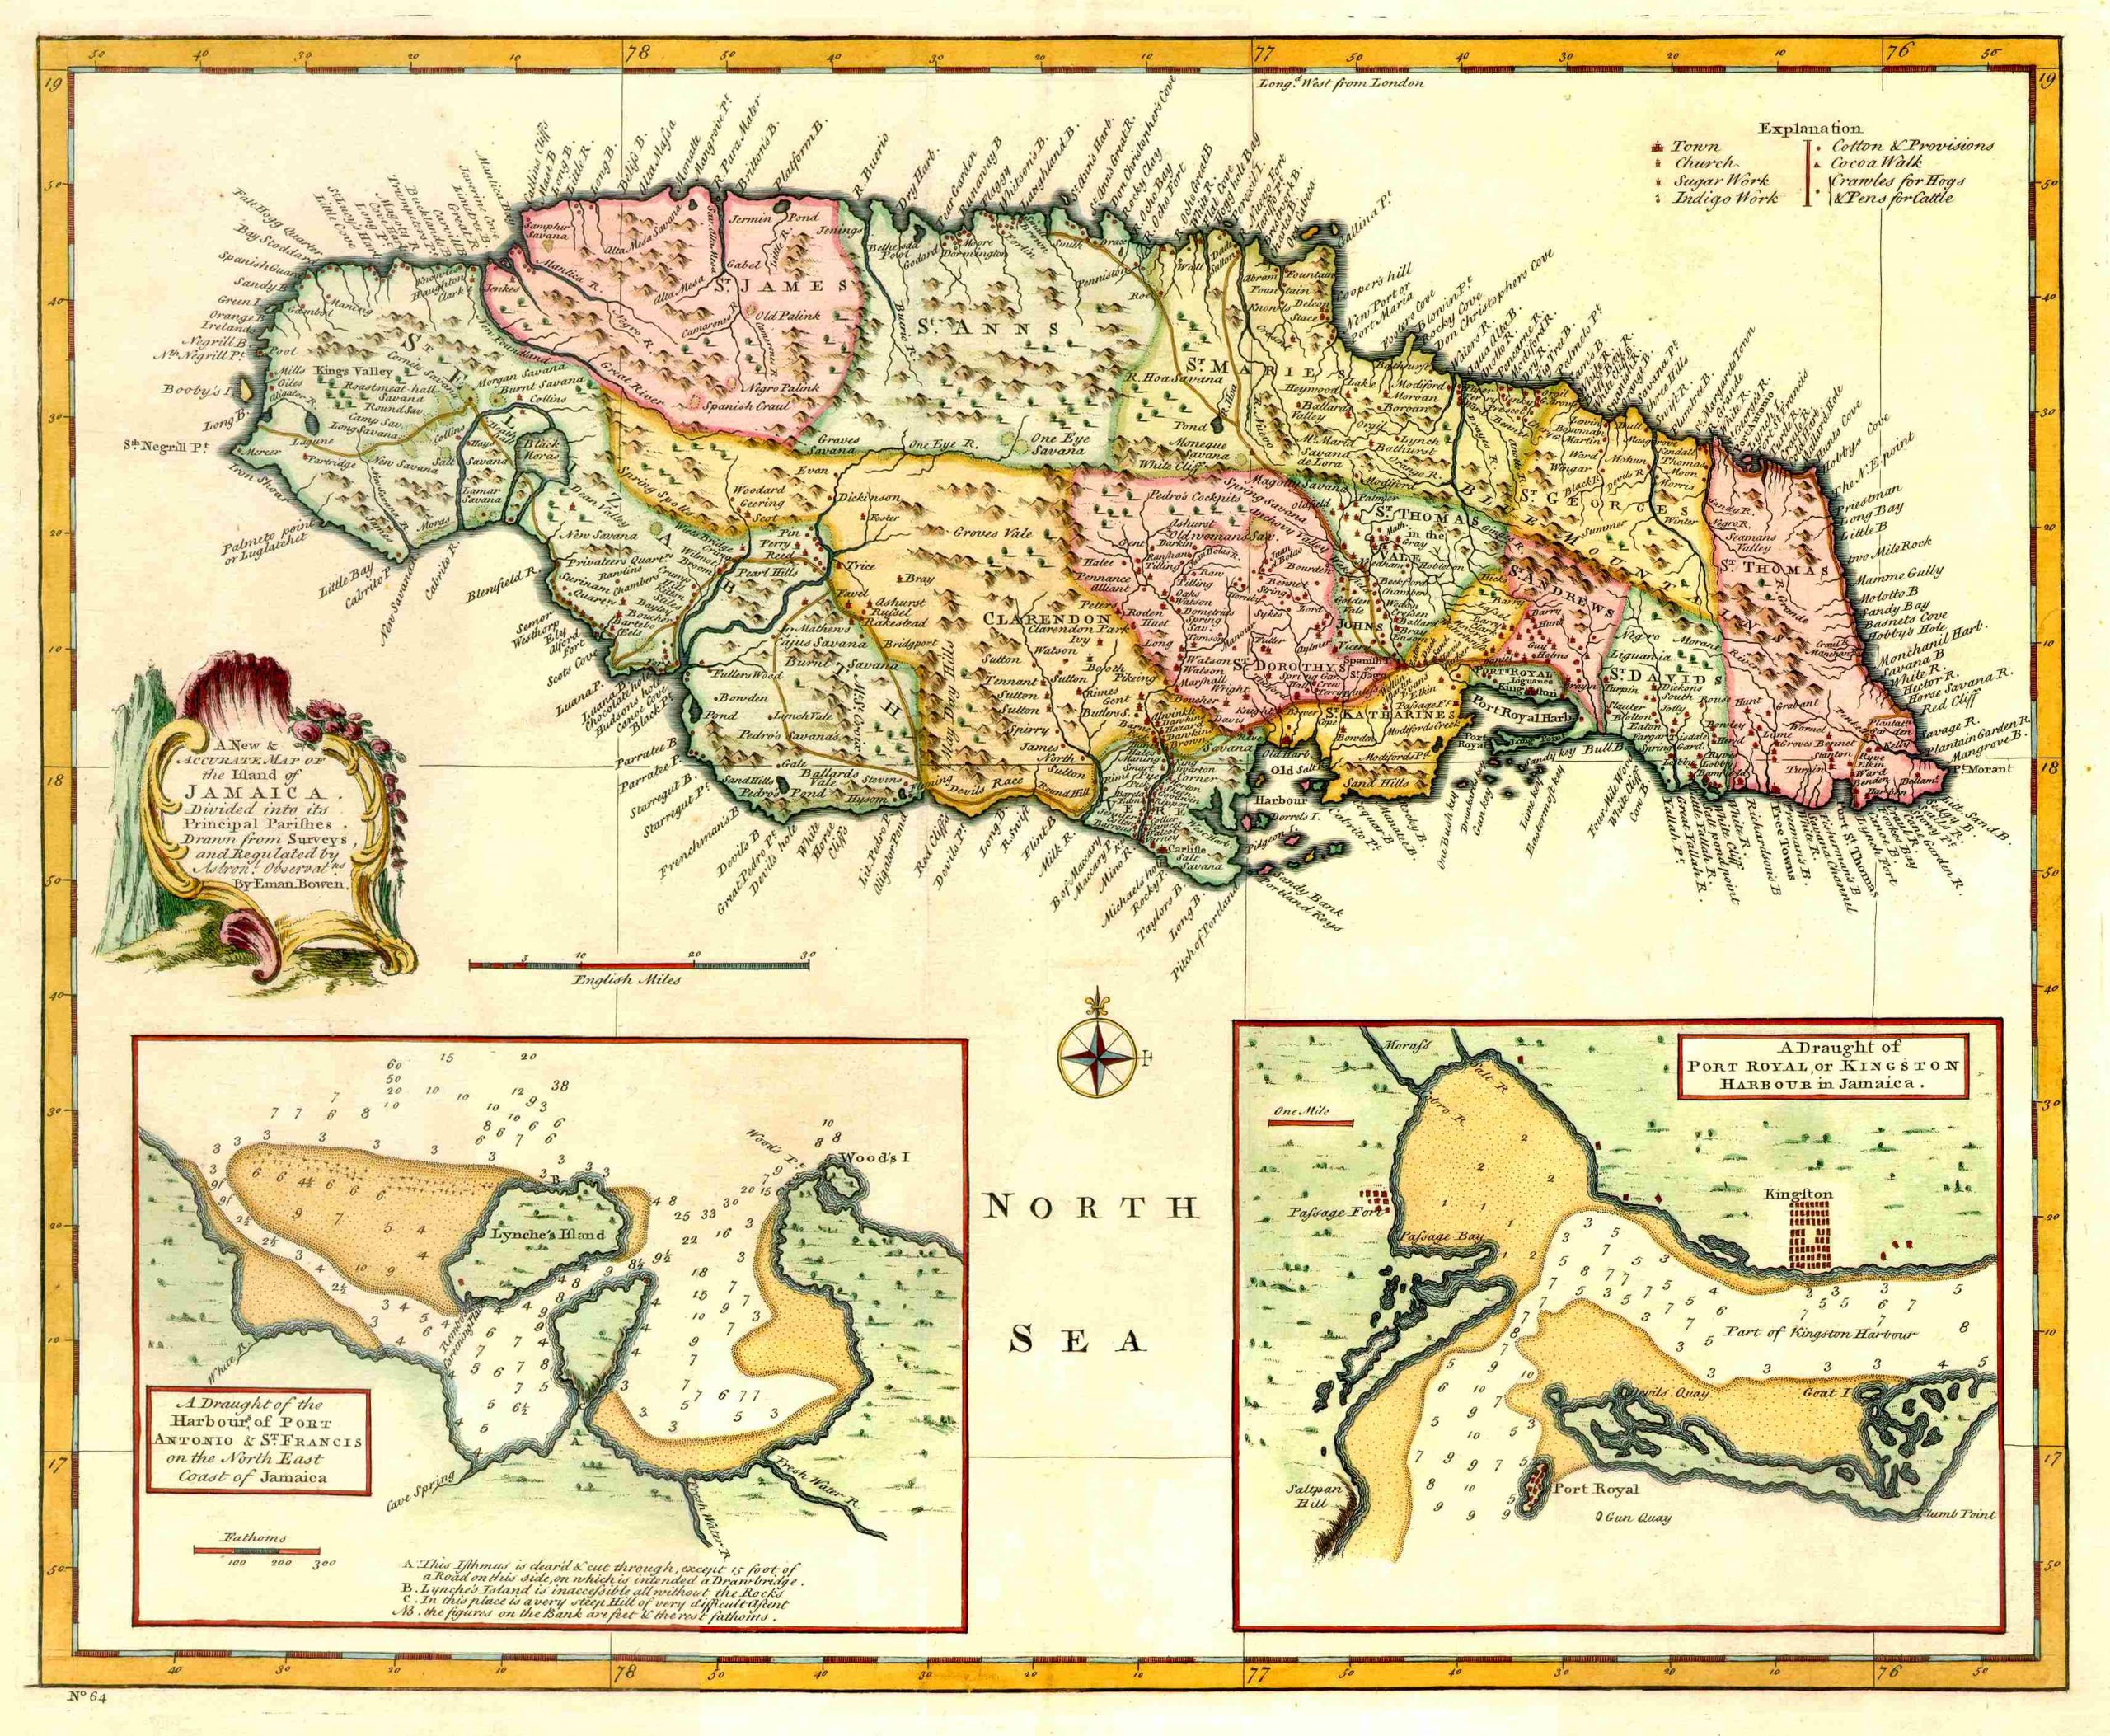 Bowen's 1744 Map